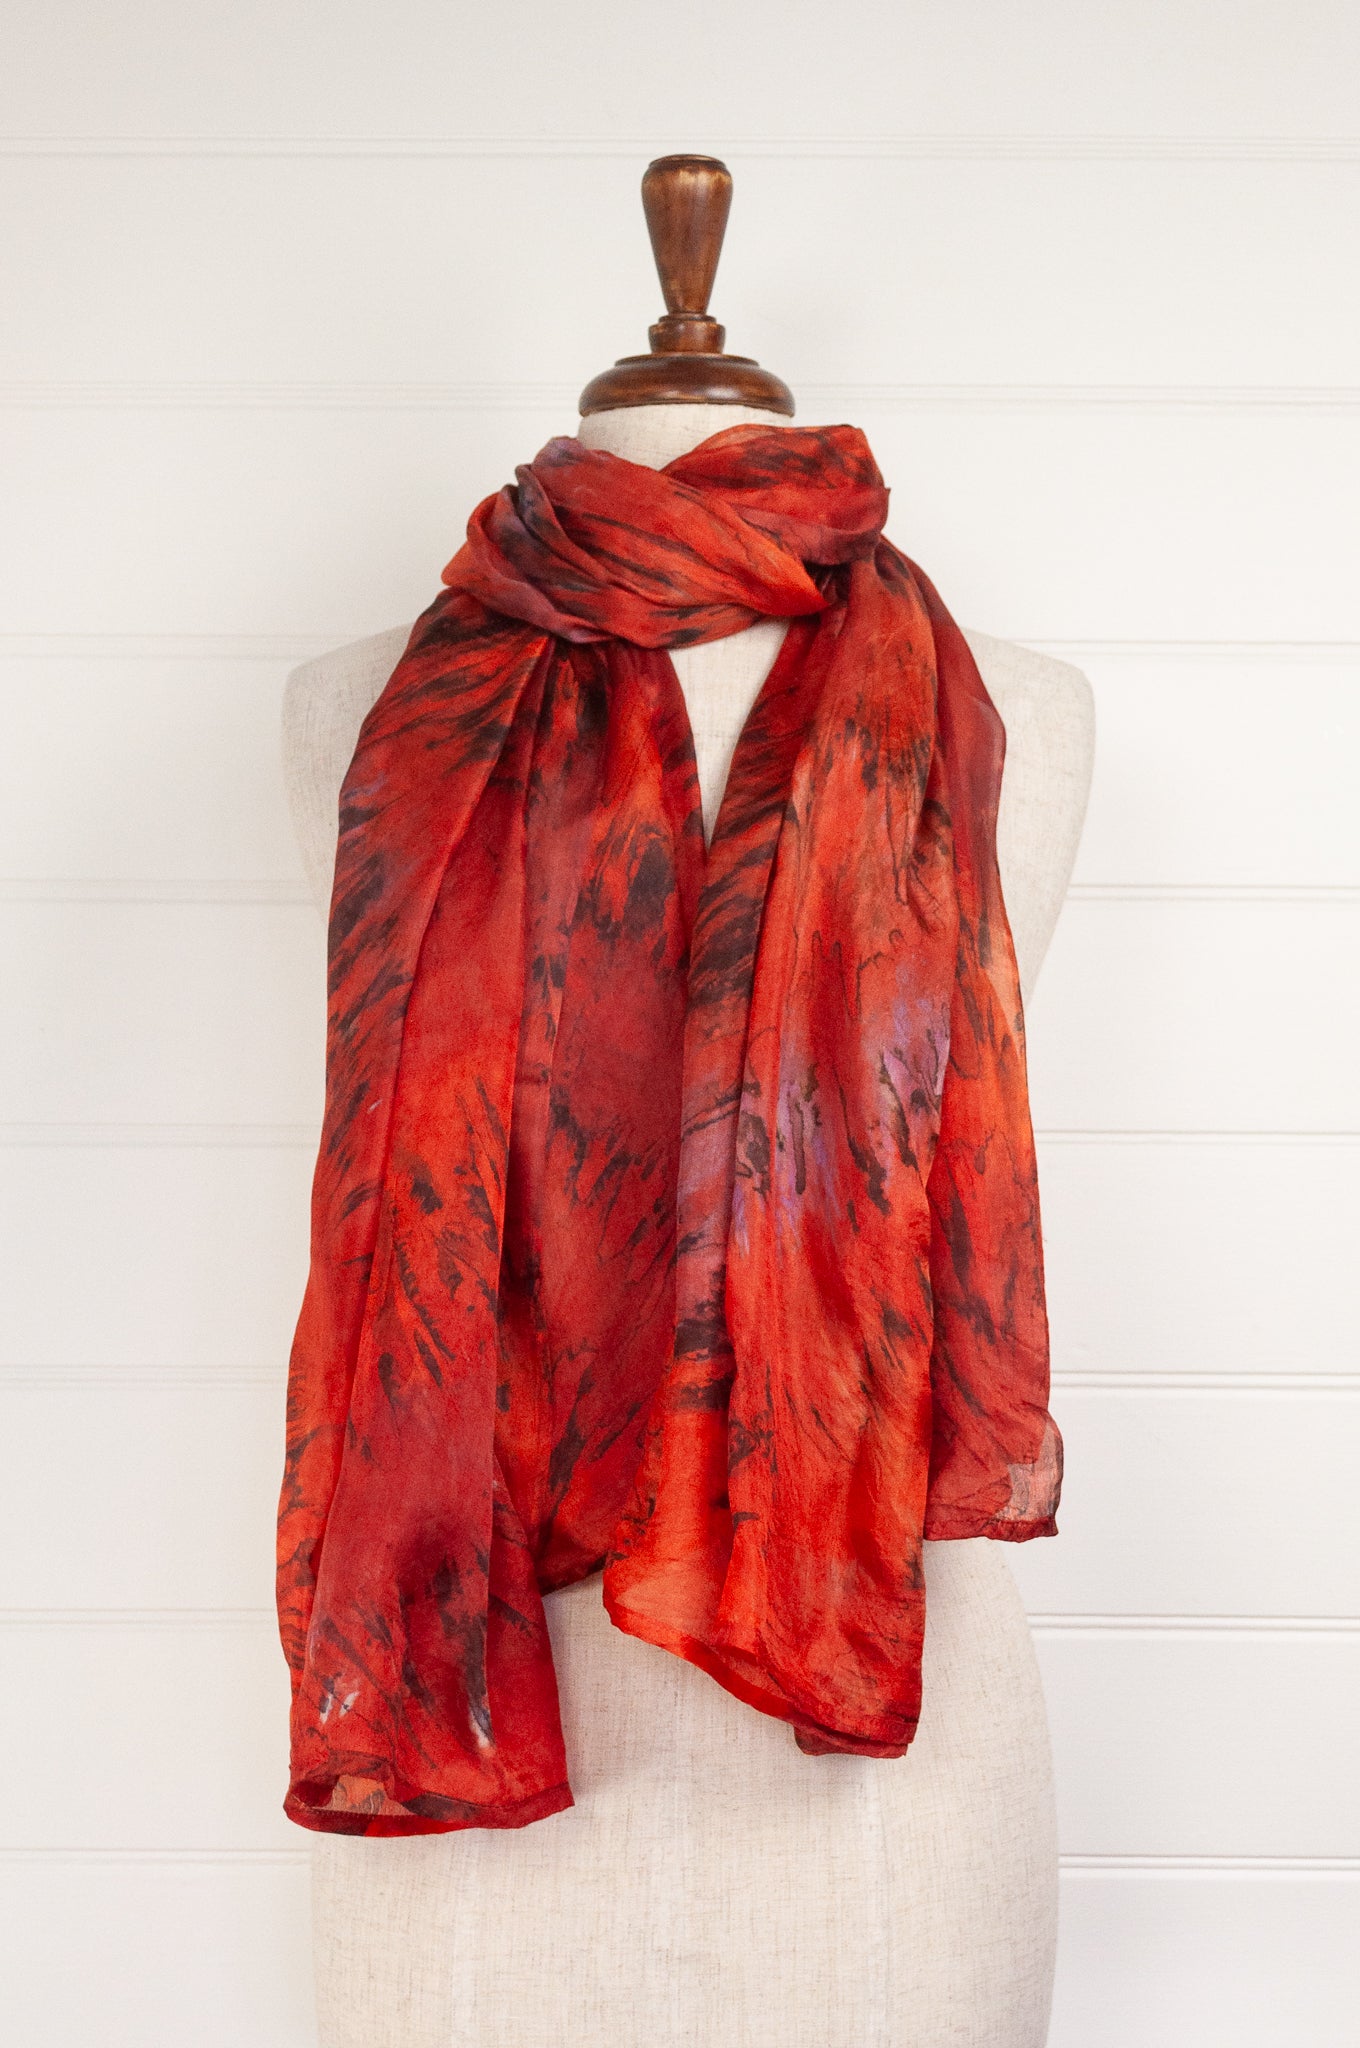 Tie dye silk scarf in shades of orange, magenta and bronze.